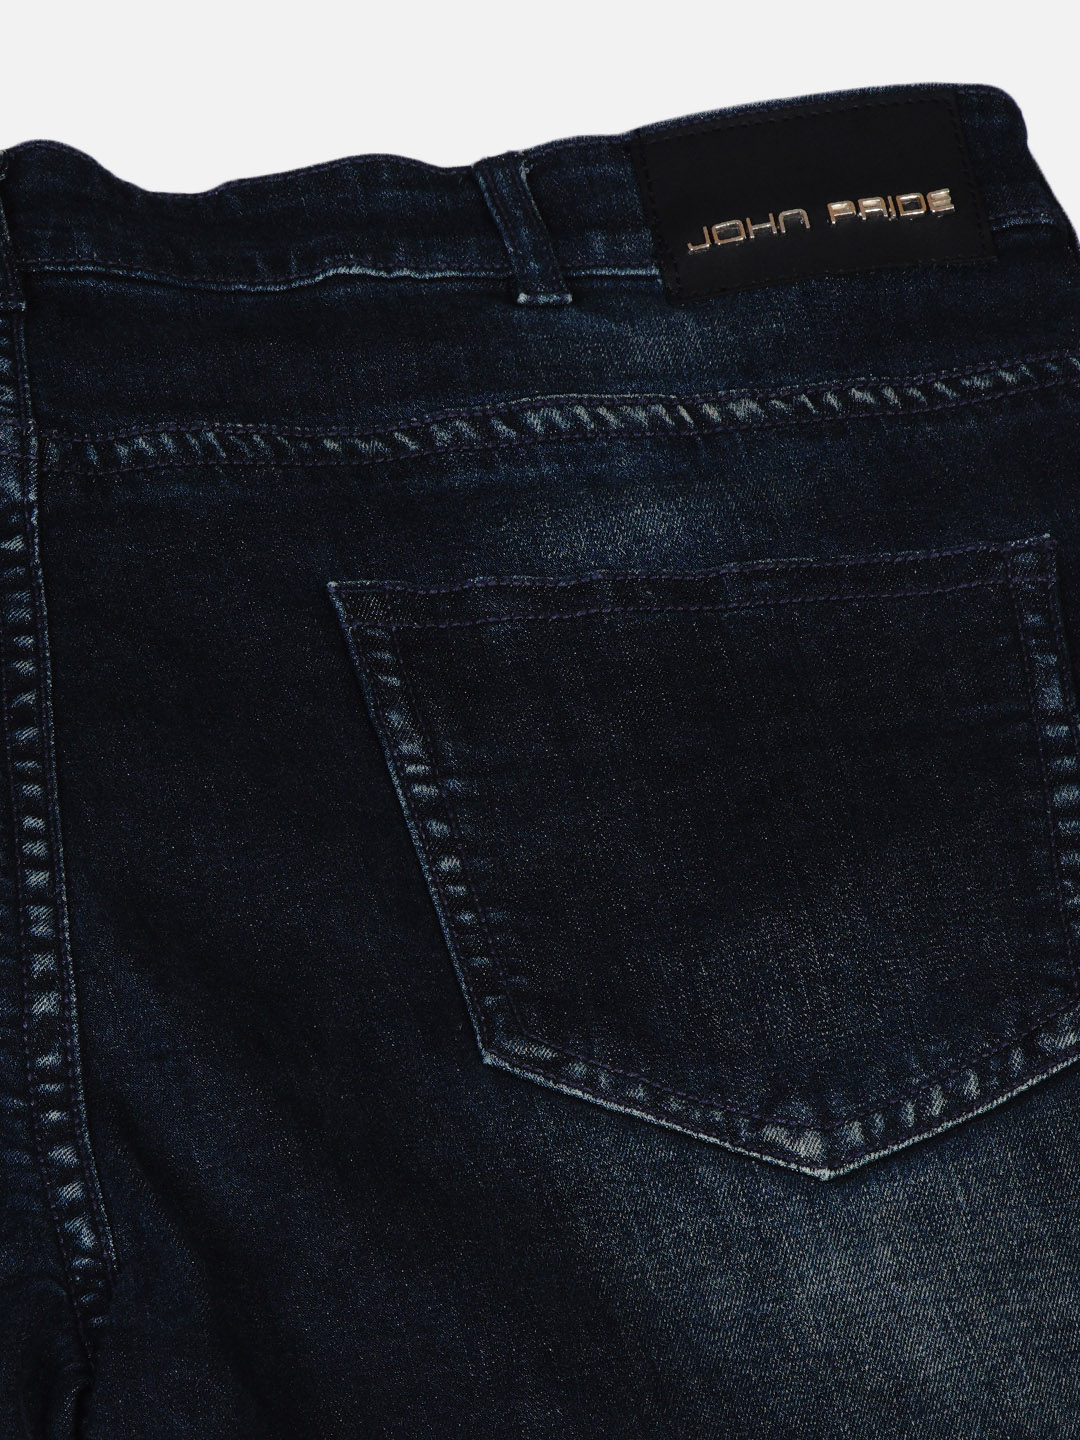 bottomwear/jeans/JPJ6030/jpj6030-3.jpg